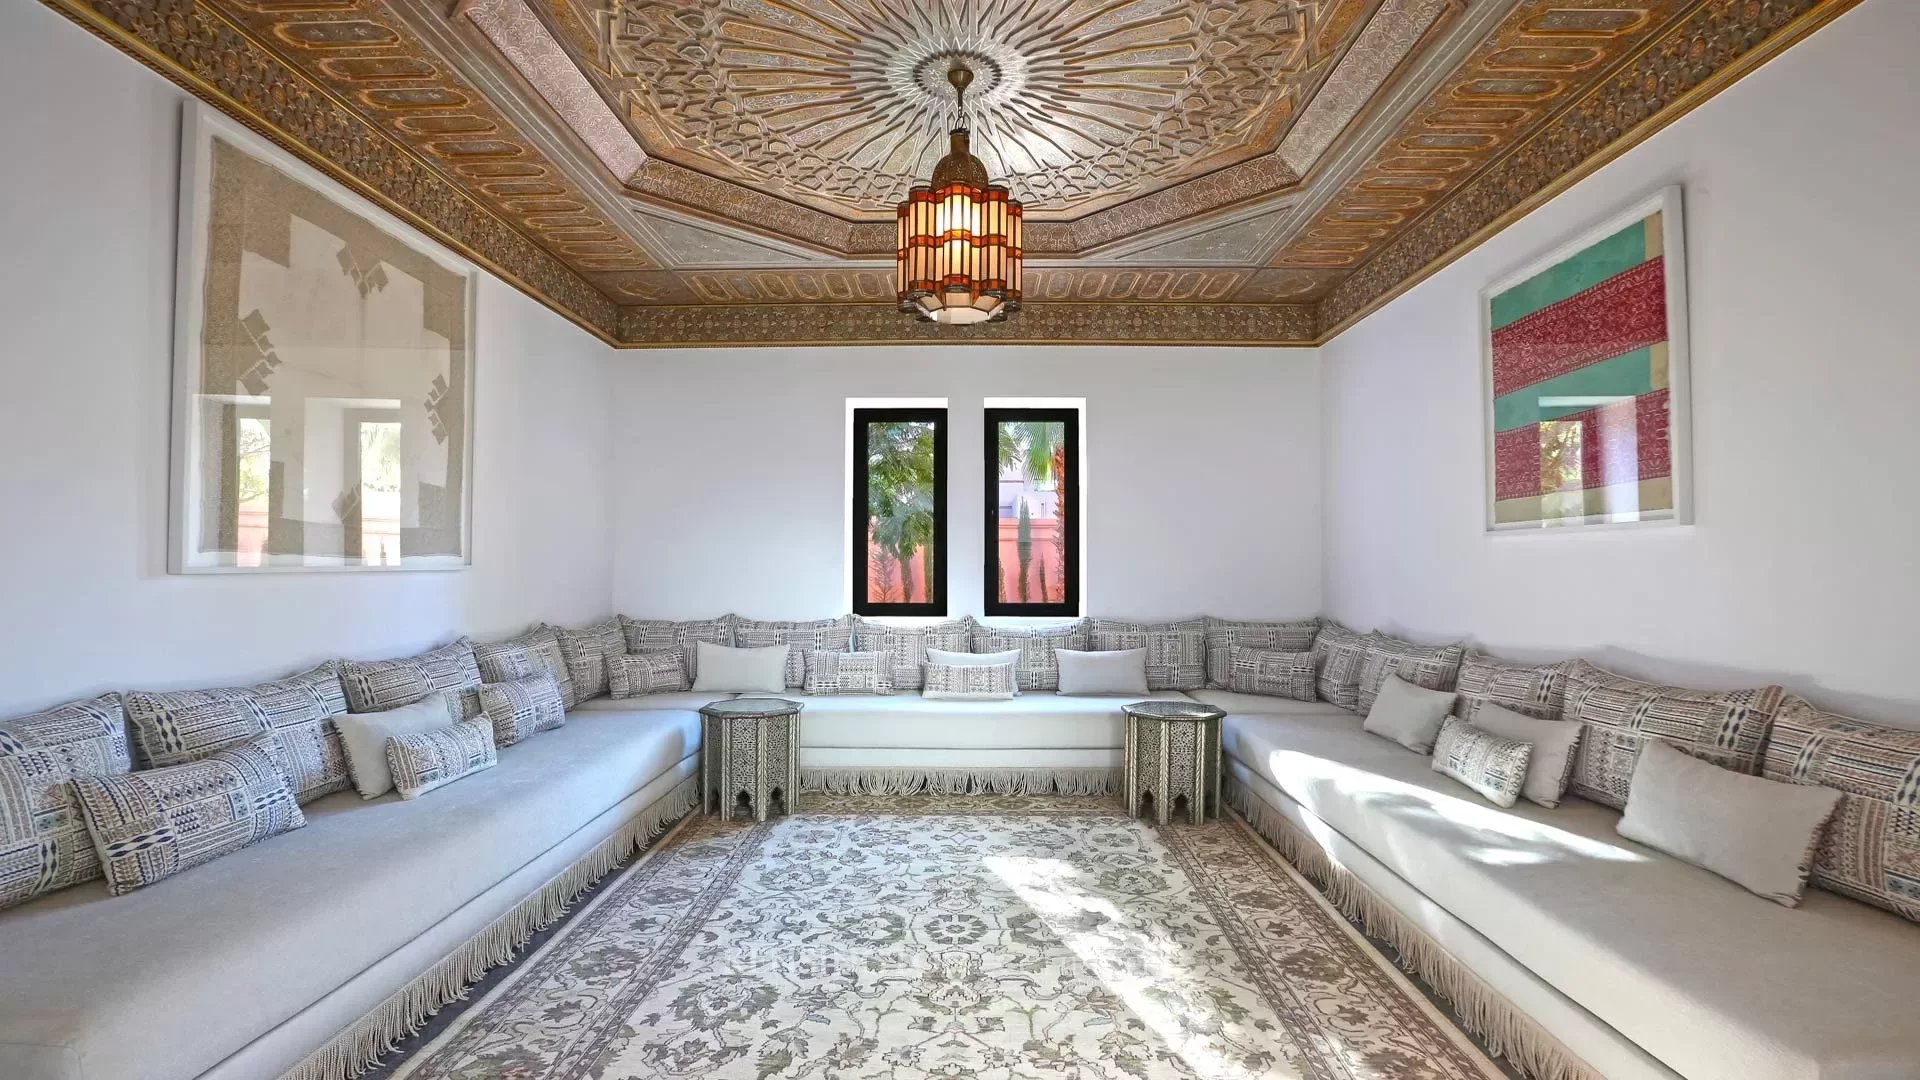 Villa Imi in Marrakech, Morocco